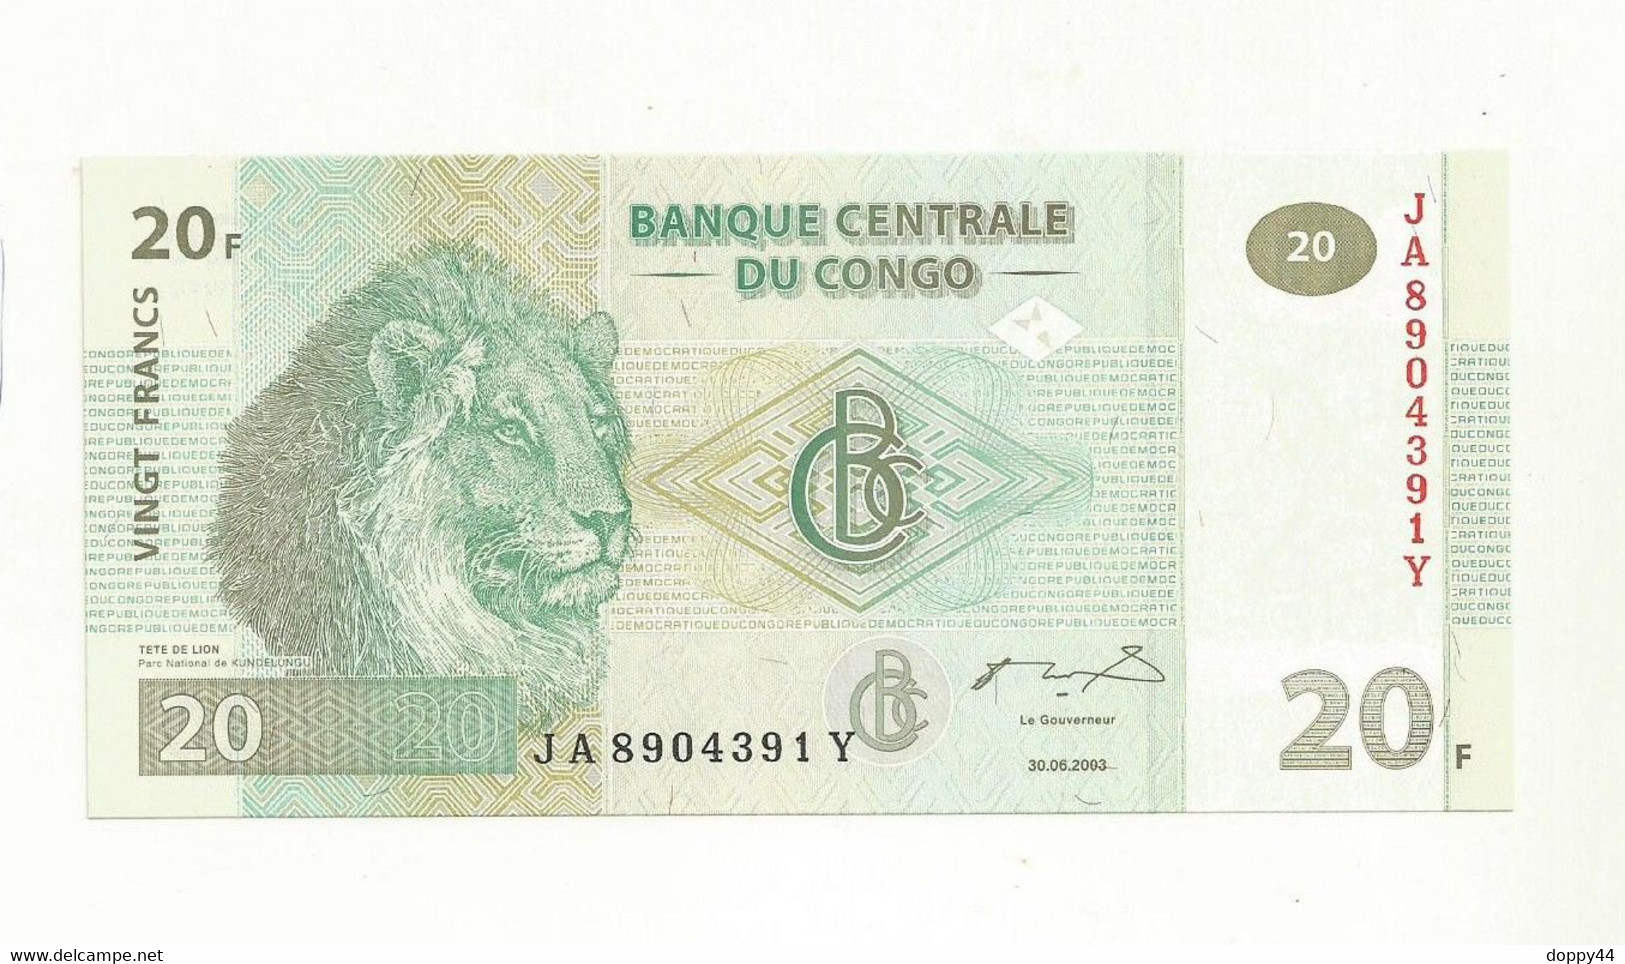 BILLET NEUF BANQUE CENTRALE DU CONGO 20 FRANCS THEME LIONS/LIONNES/LIONCEAUX . - Republic Of Congo (Congo-Brazzaville)